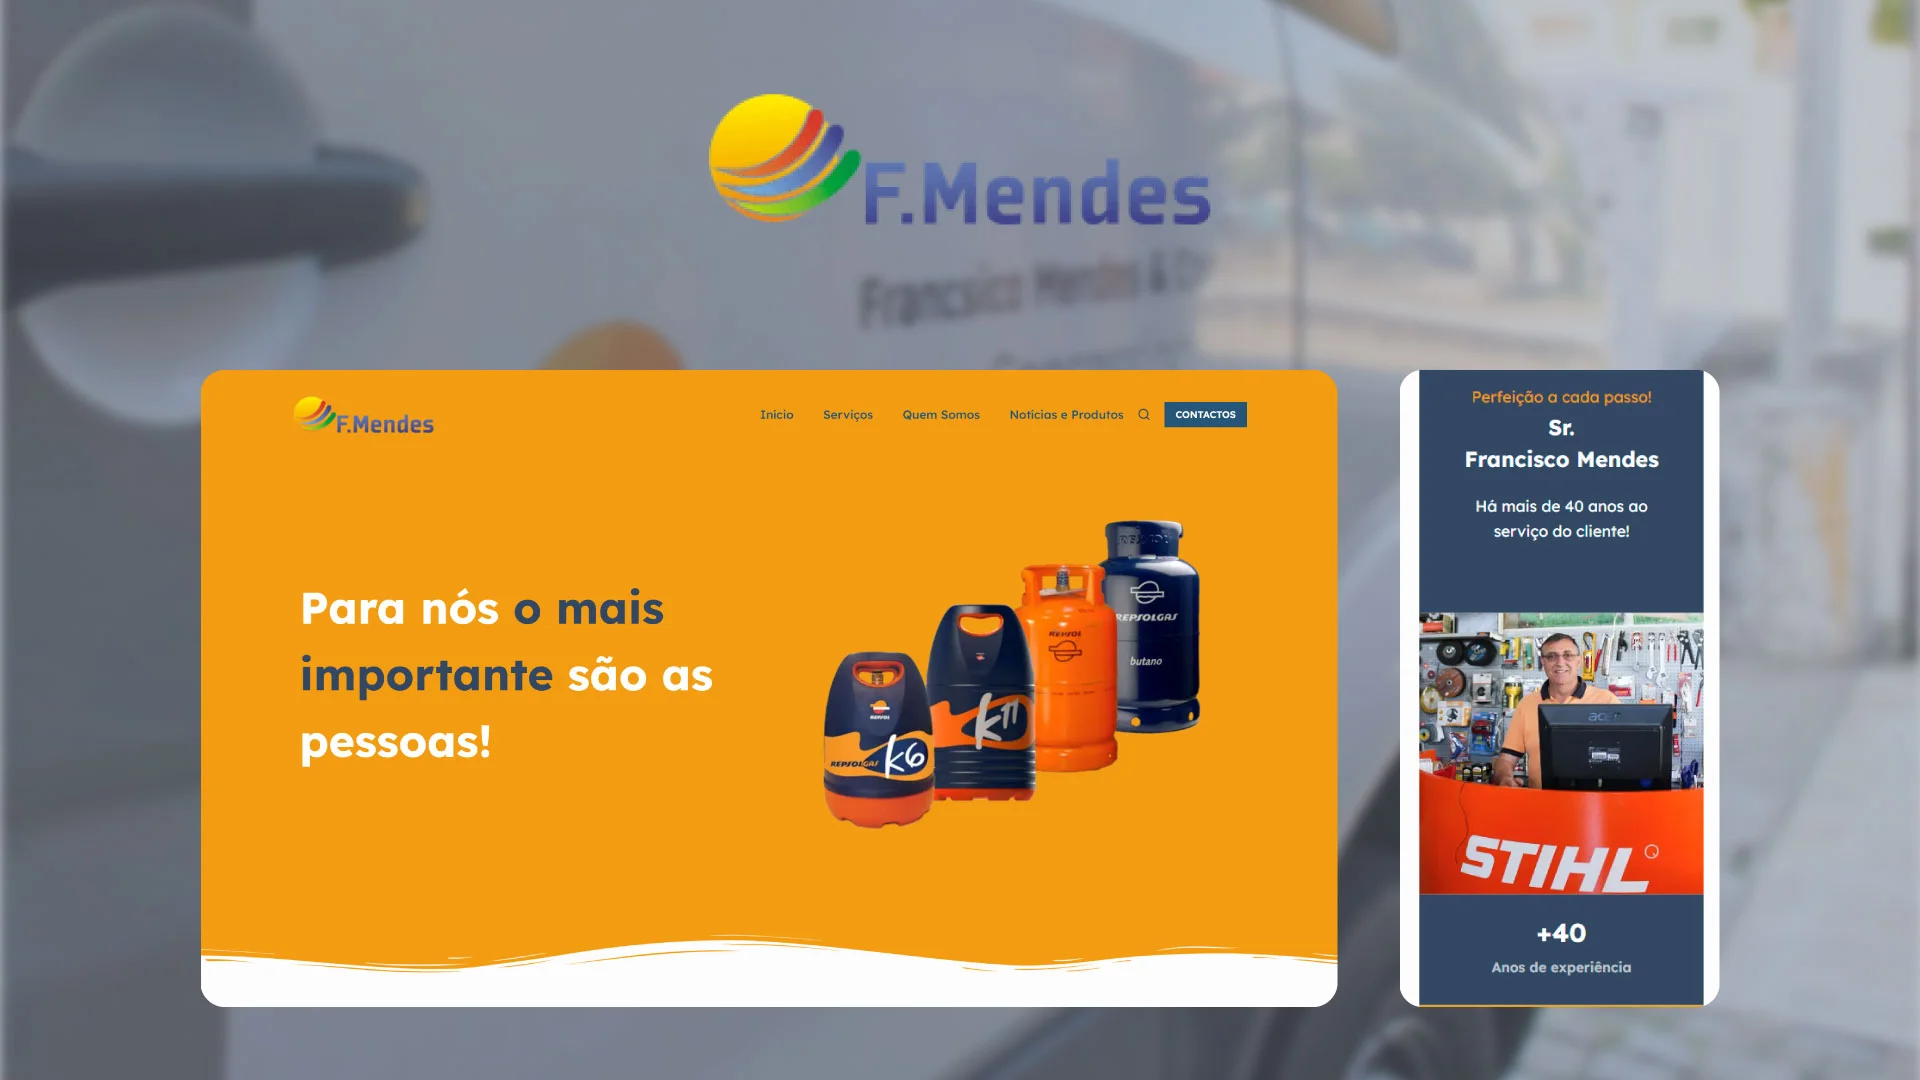 Francisco Mendes Website